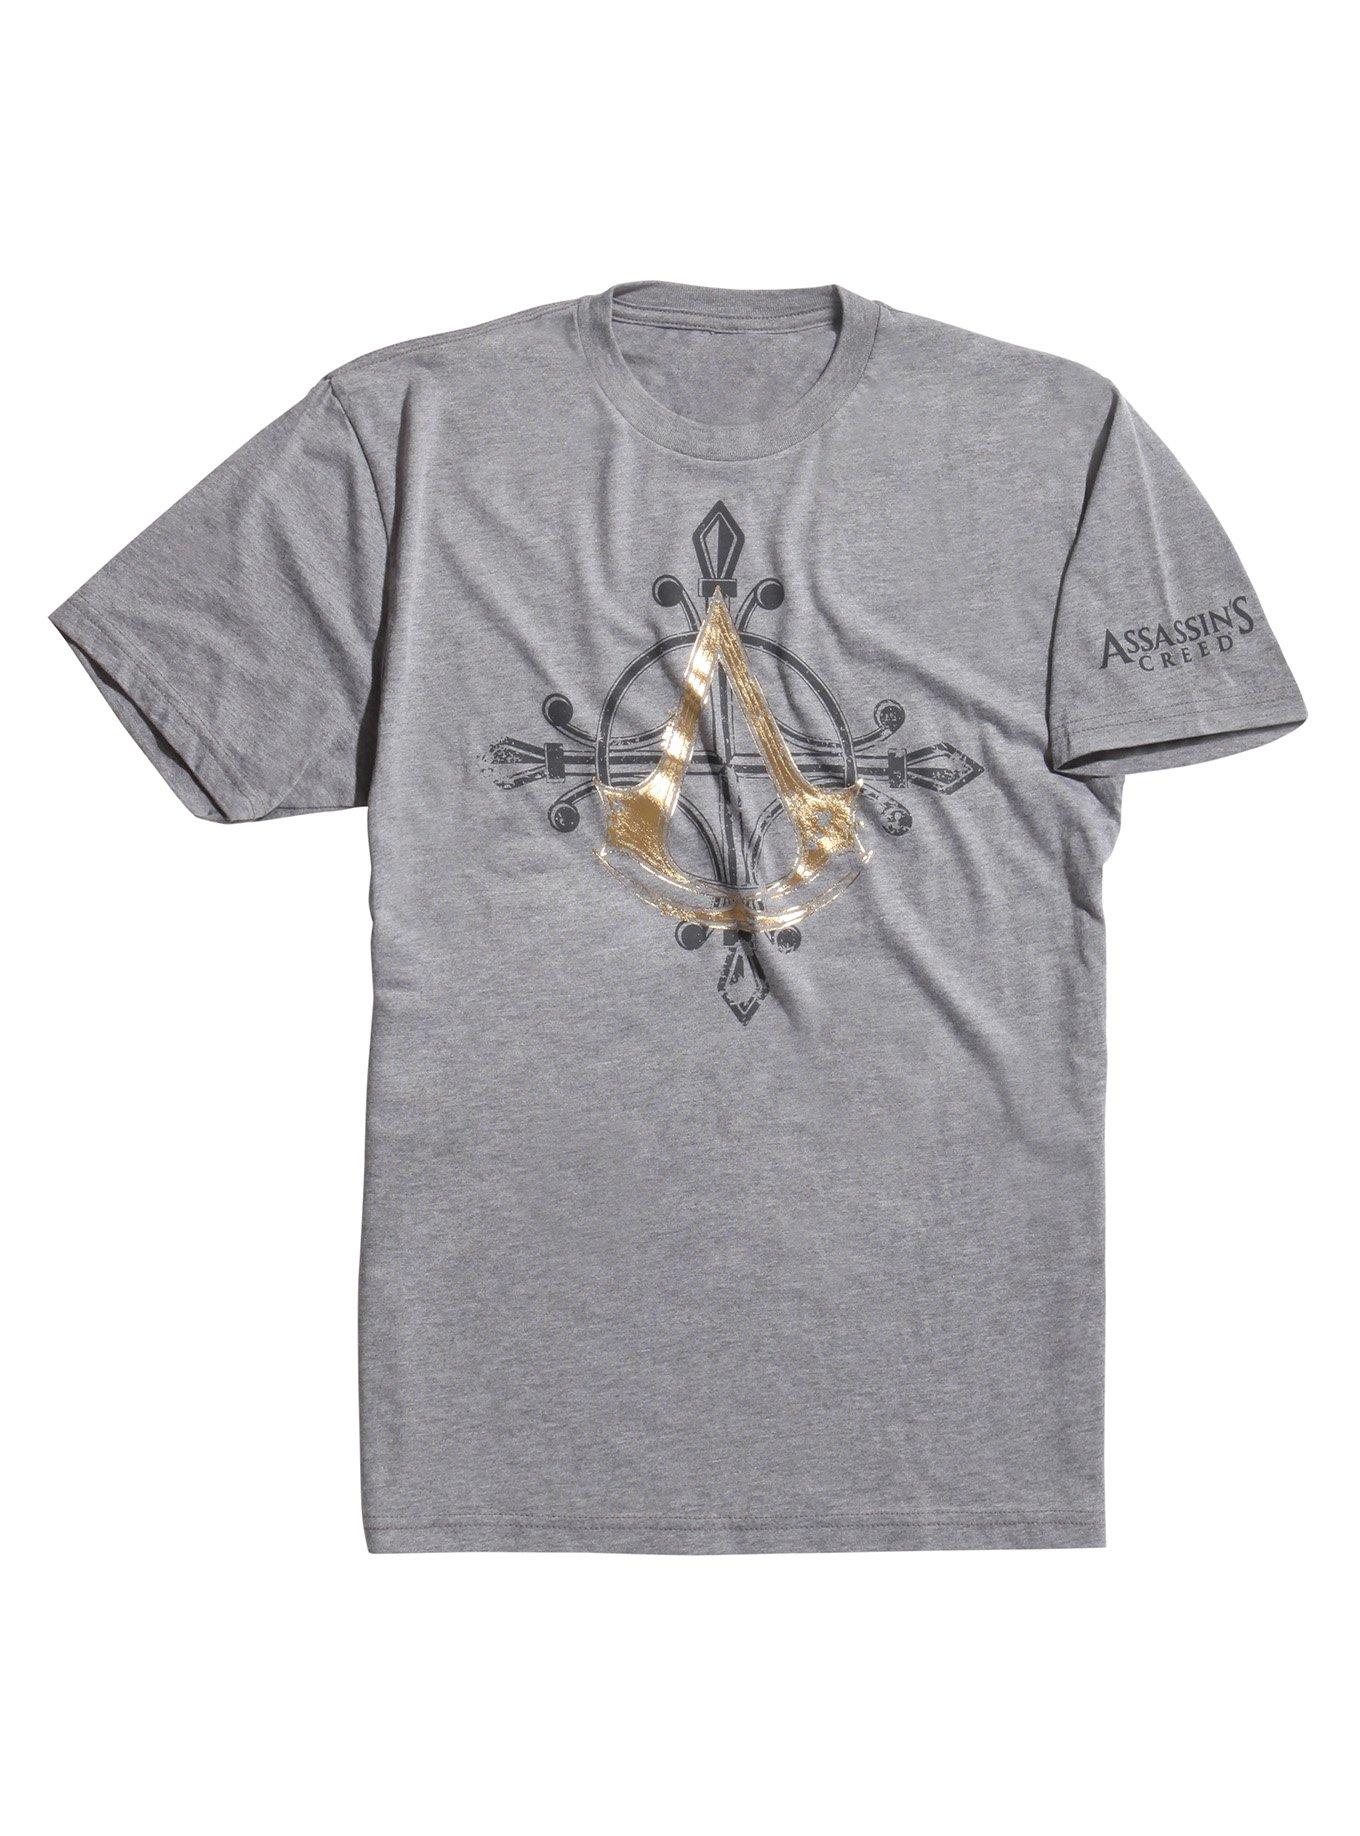 Assassin's Creed Gold Foil Logo T-Shirt, GREY, hi-res